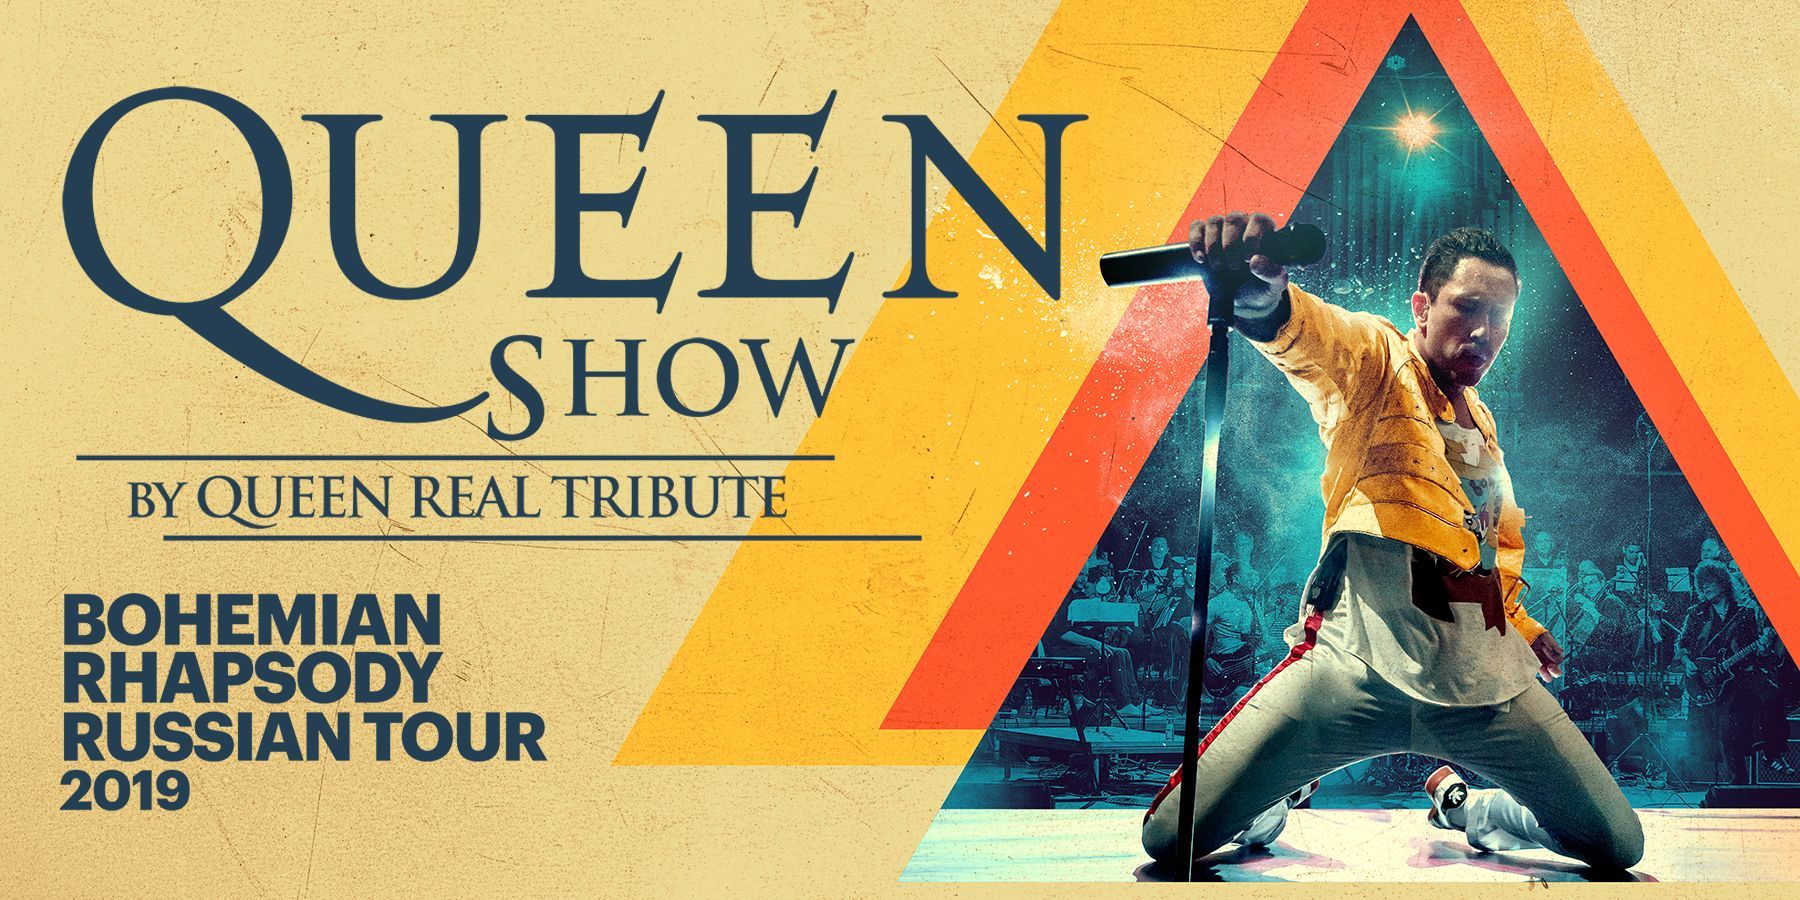 Queen Real Tribute "Bohemian Rhapsody"